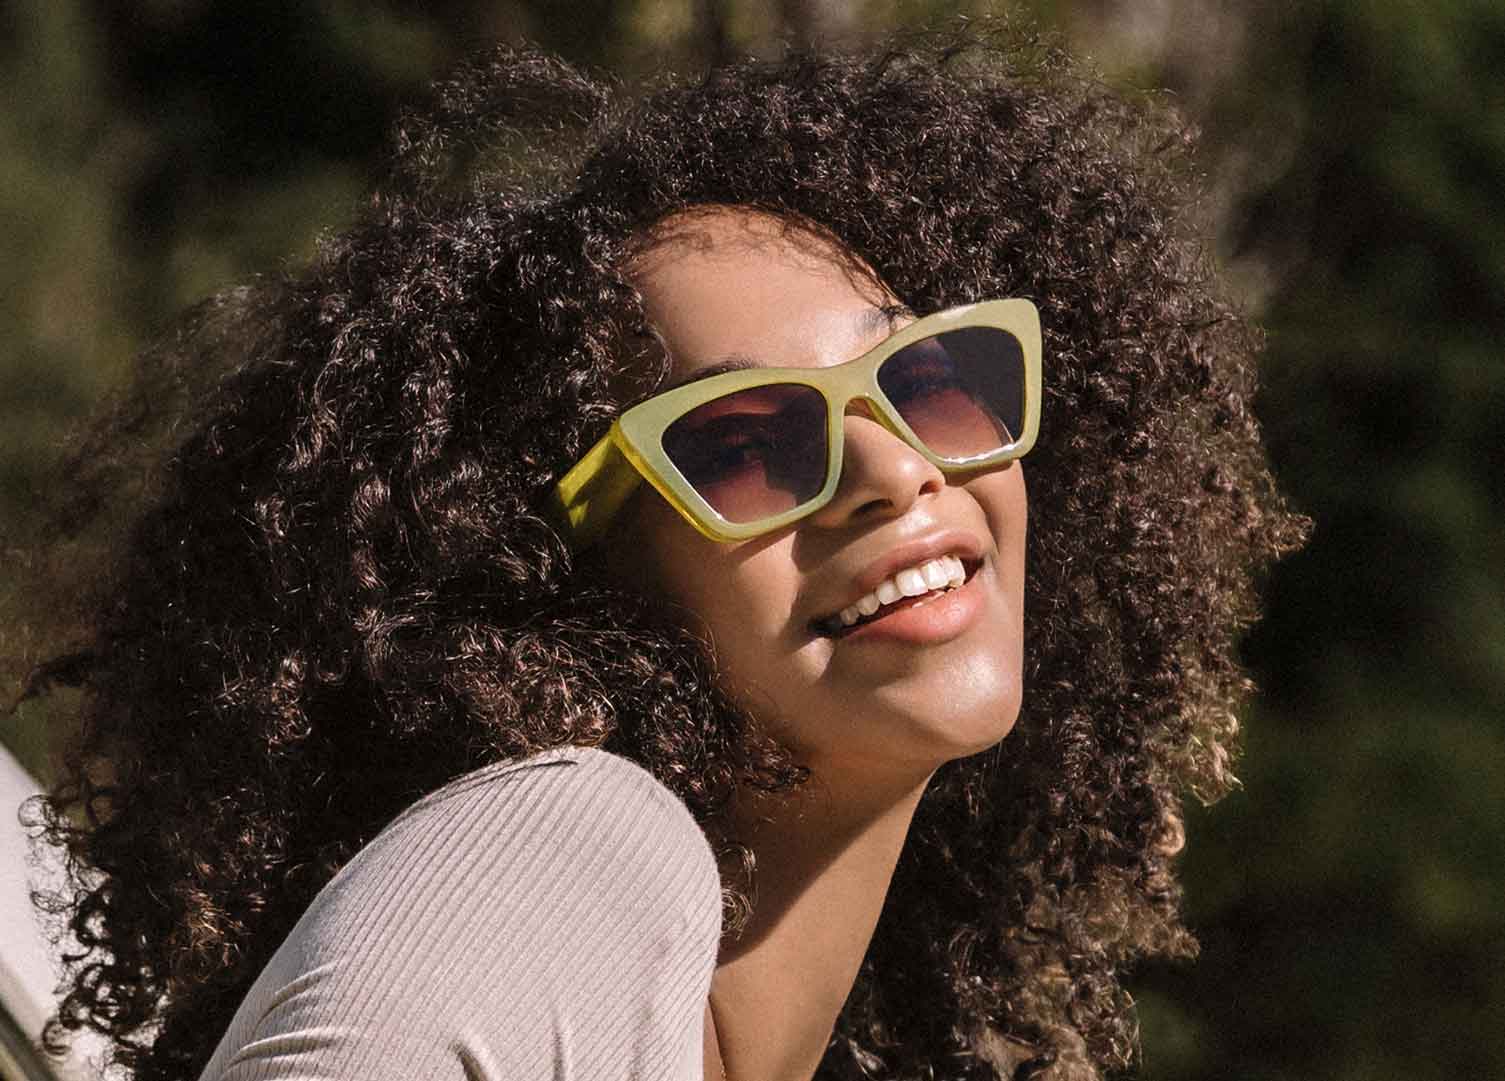 Tahoe Sunglasses